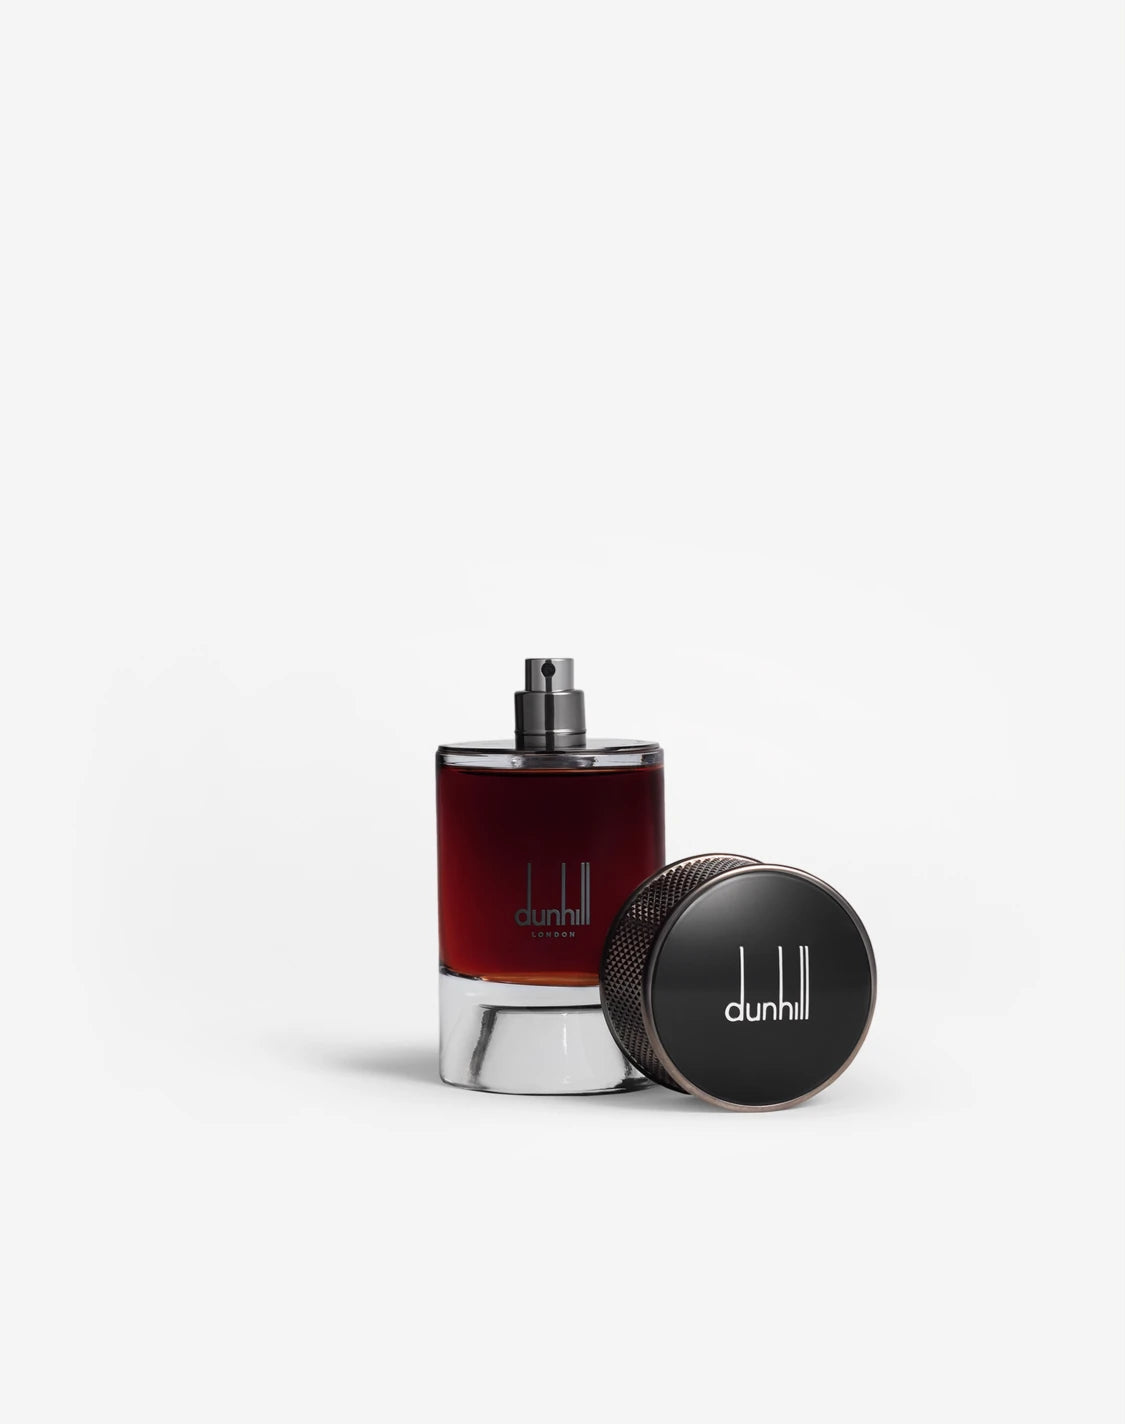 Dunhill Signature Collection Agar Wood Eau De Parfum for Men 100ml